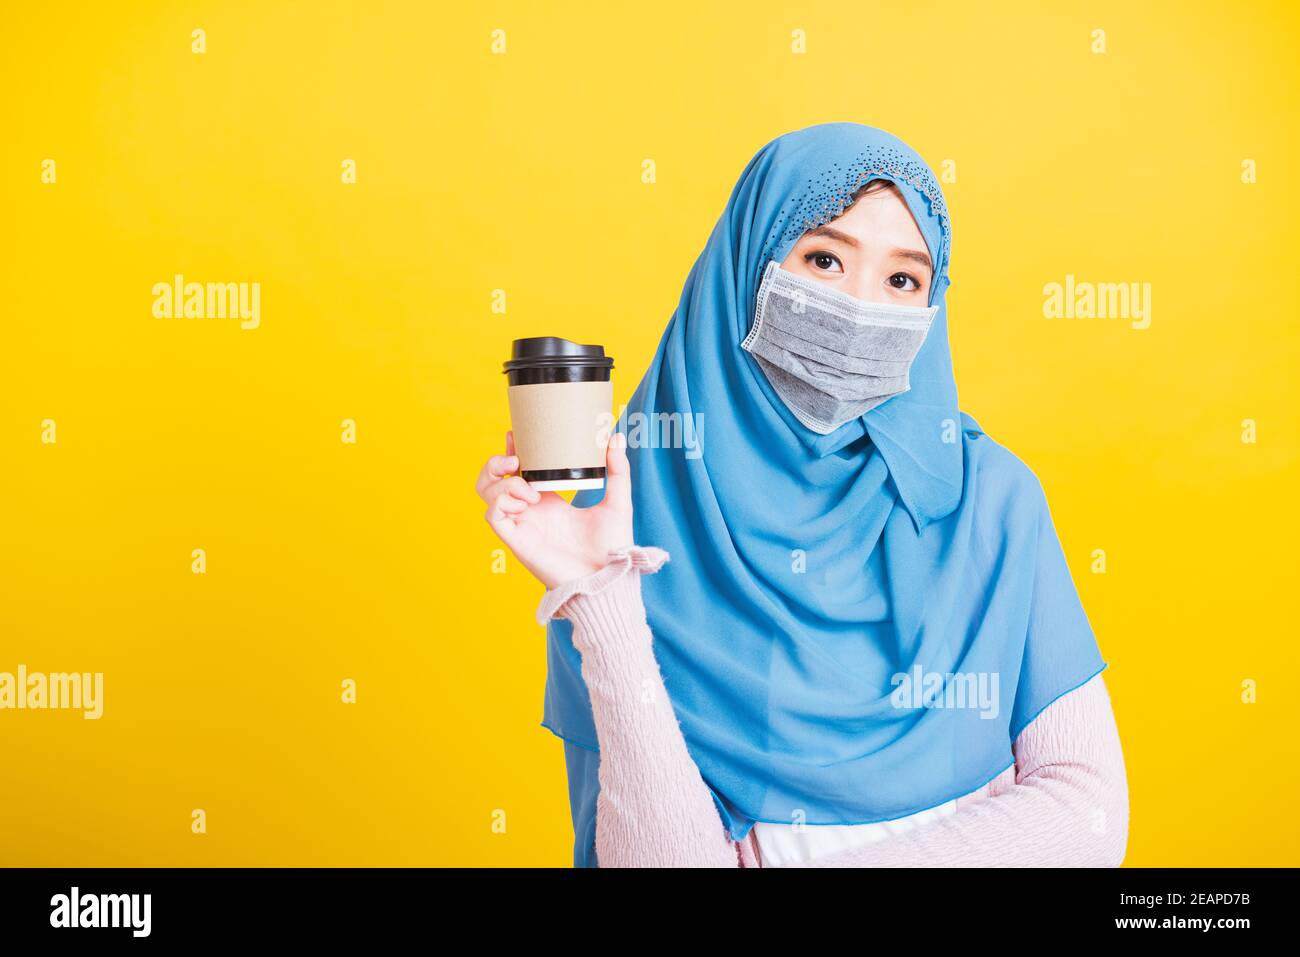 Asiatique musulmane arabe l'islam porte le voile hijab et le visage masque protection tenir tasse en papier de café Banque D'Images